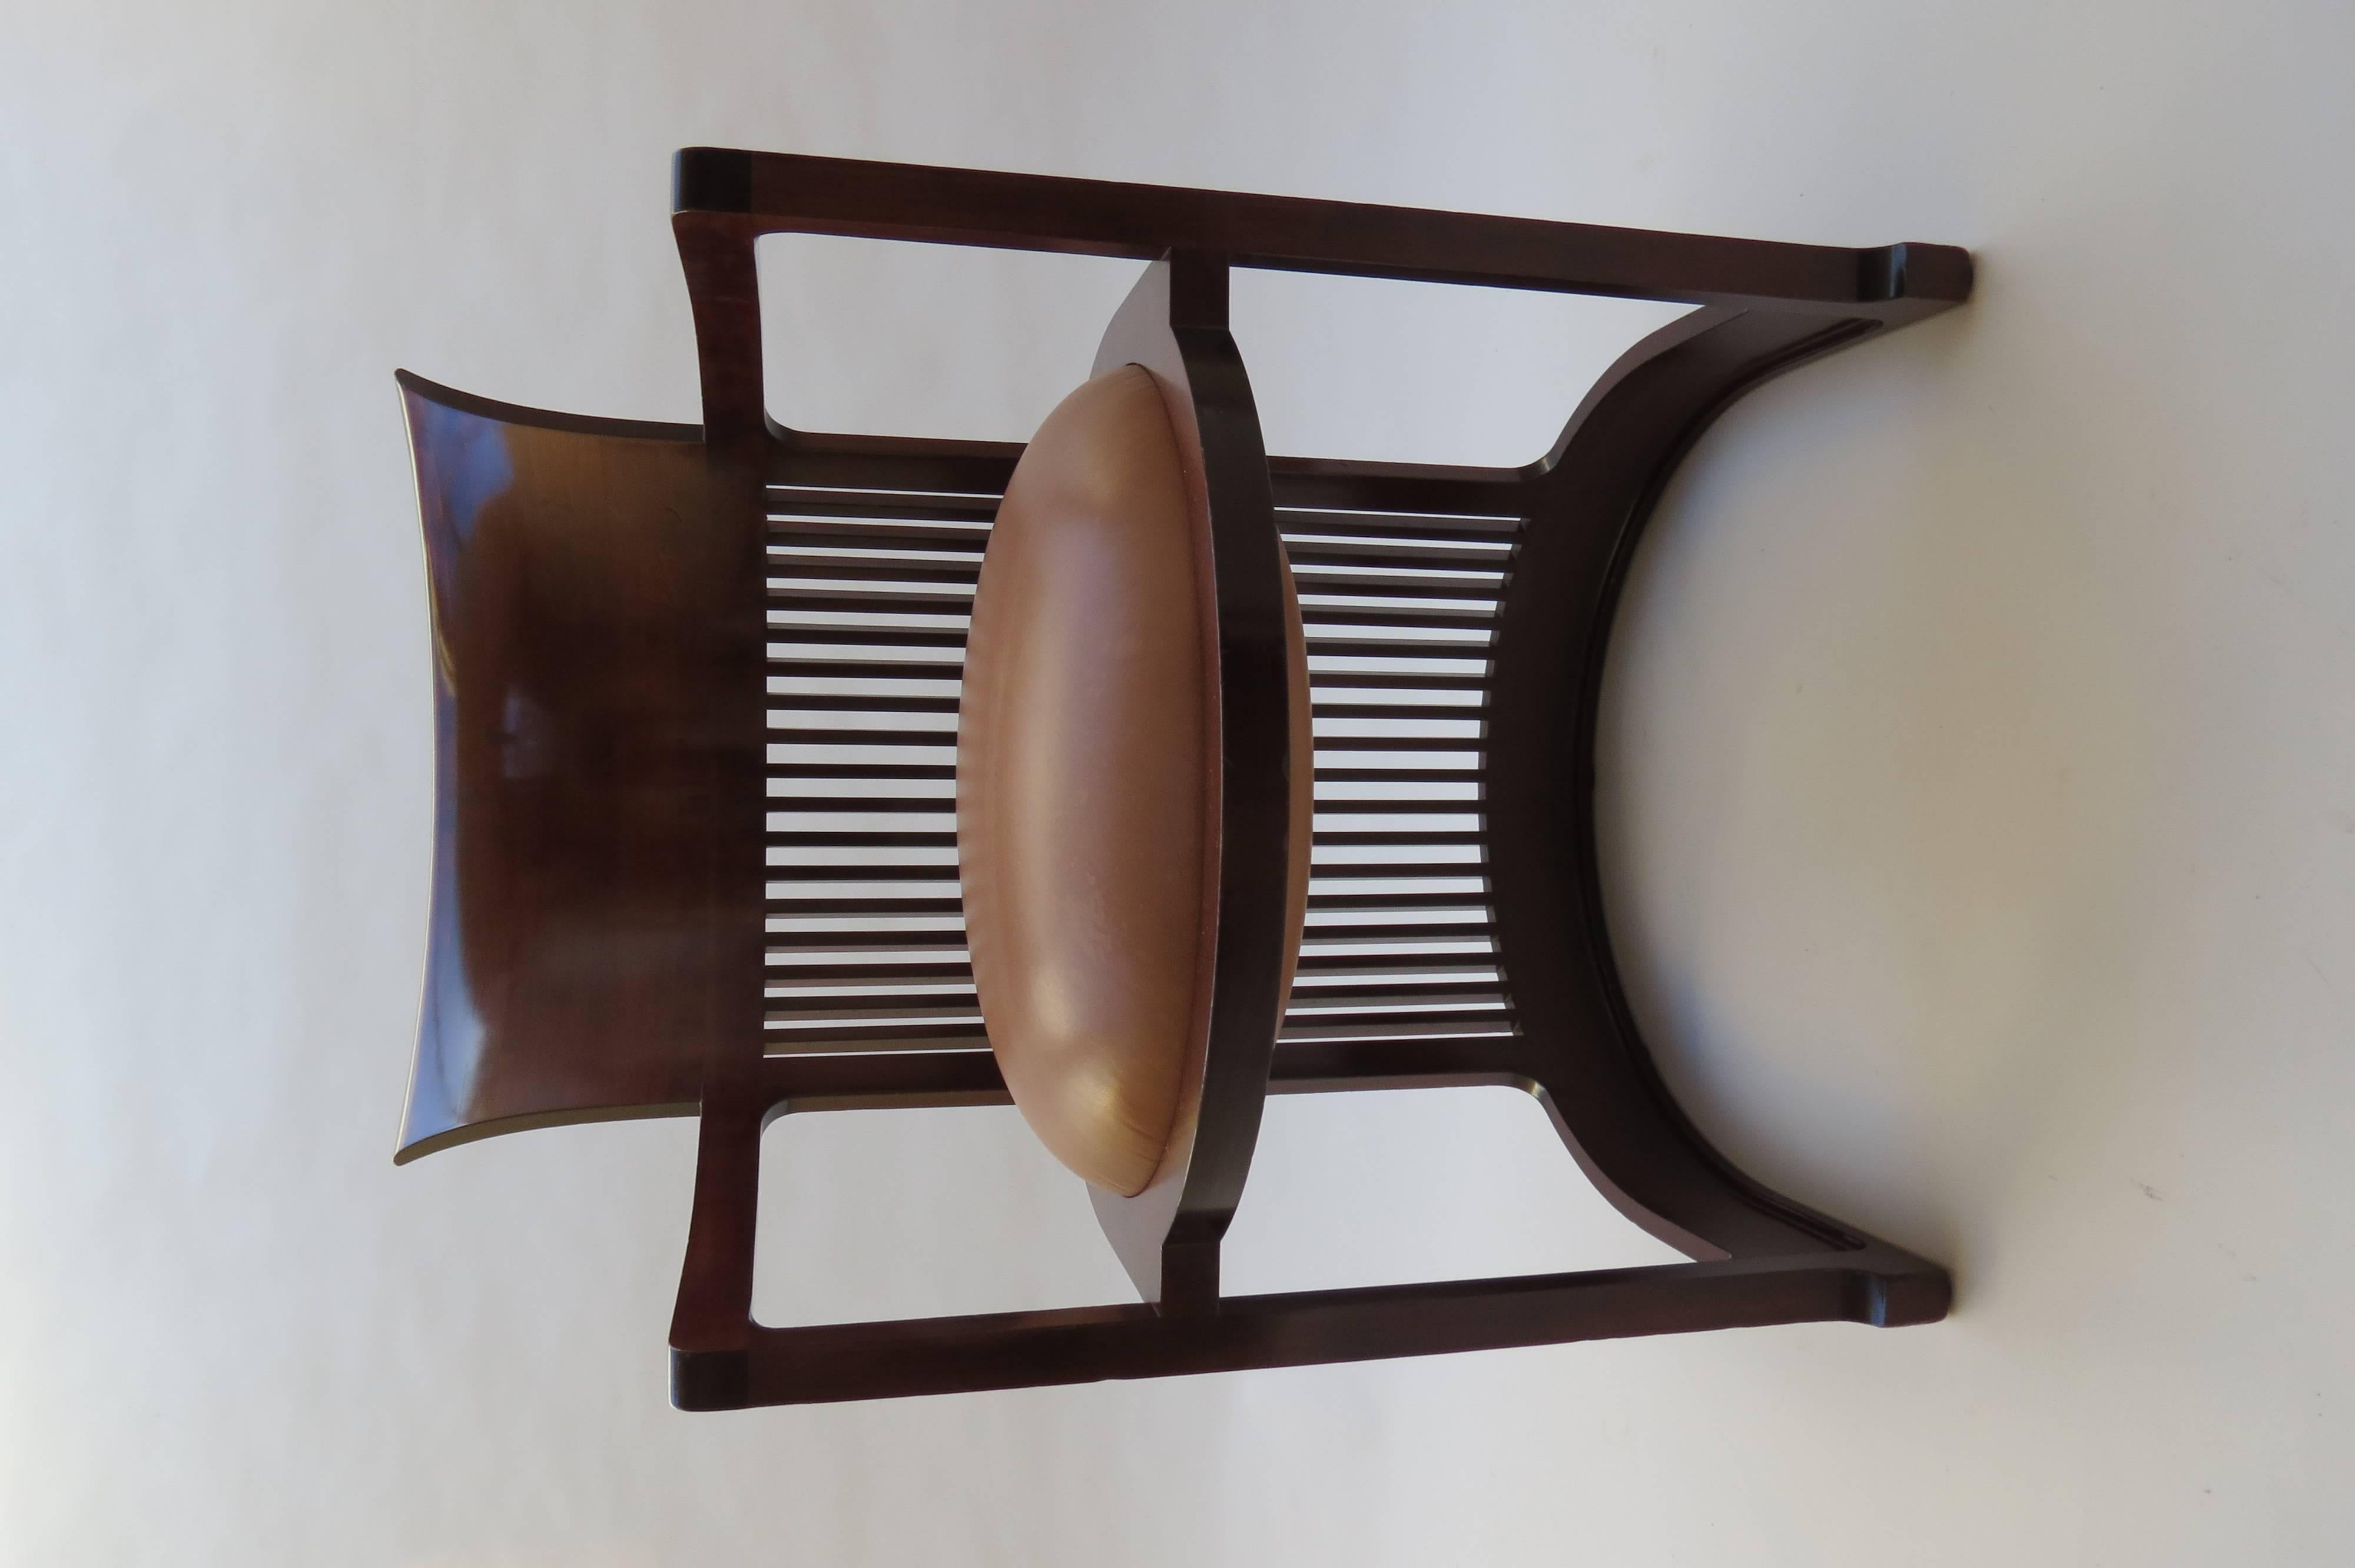 20th Century Barrel Taliesin Chair designed by Frank Lloyd Wright